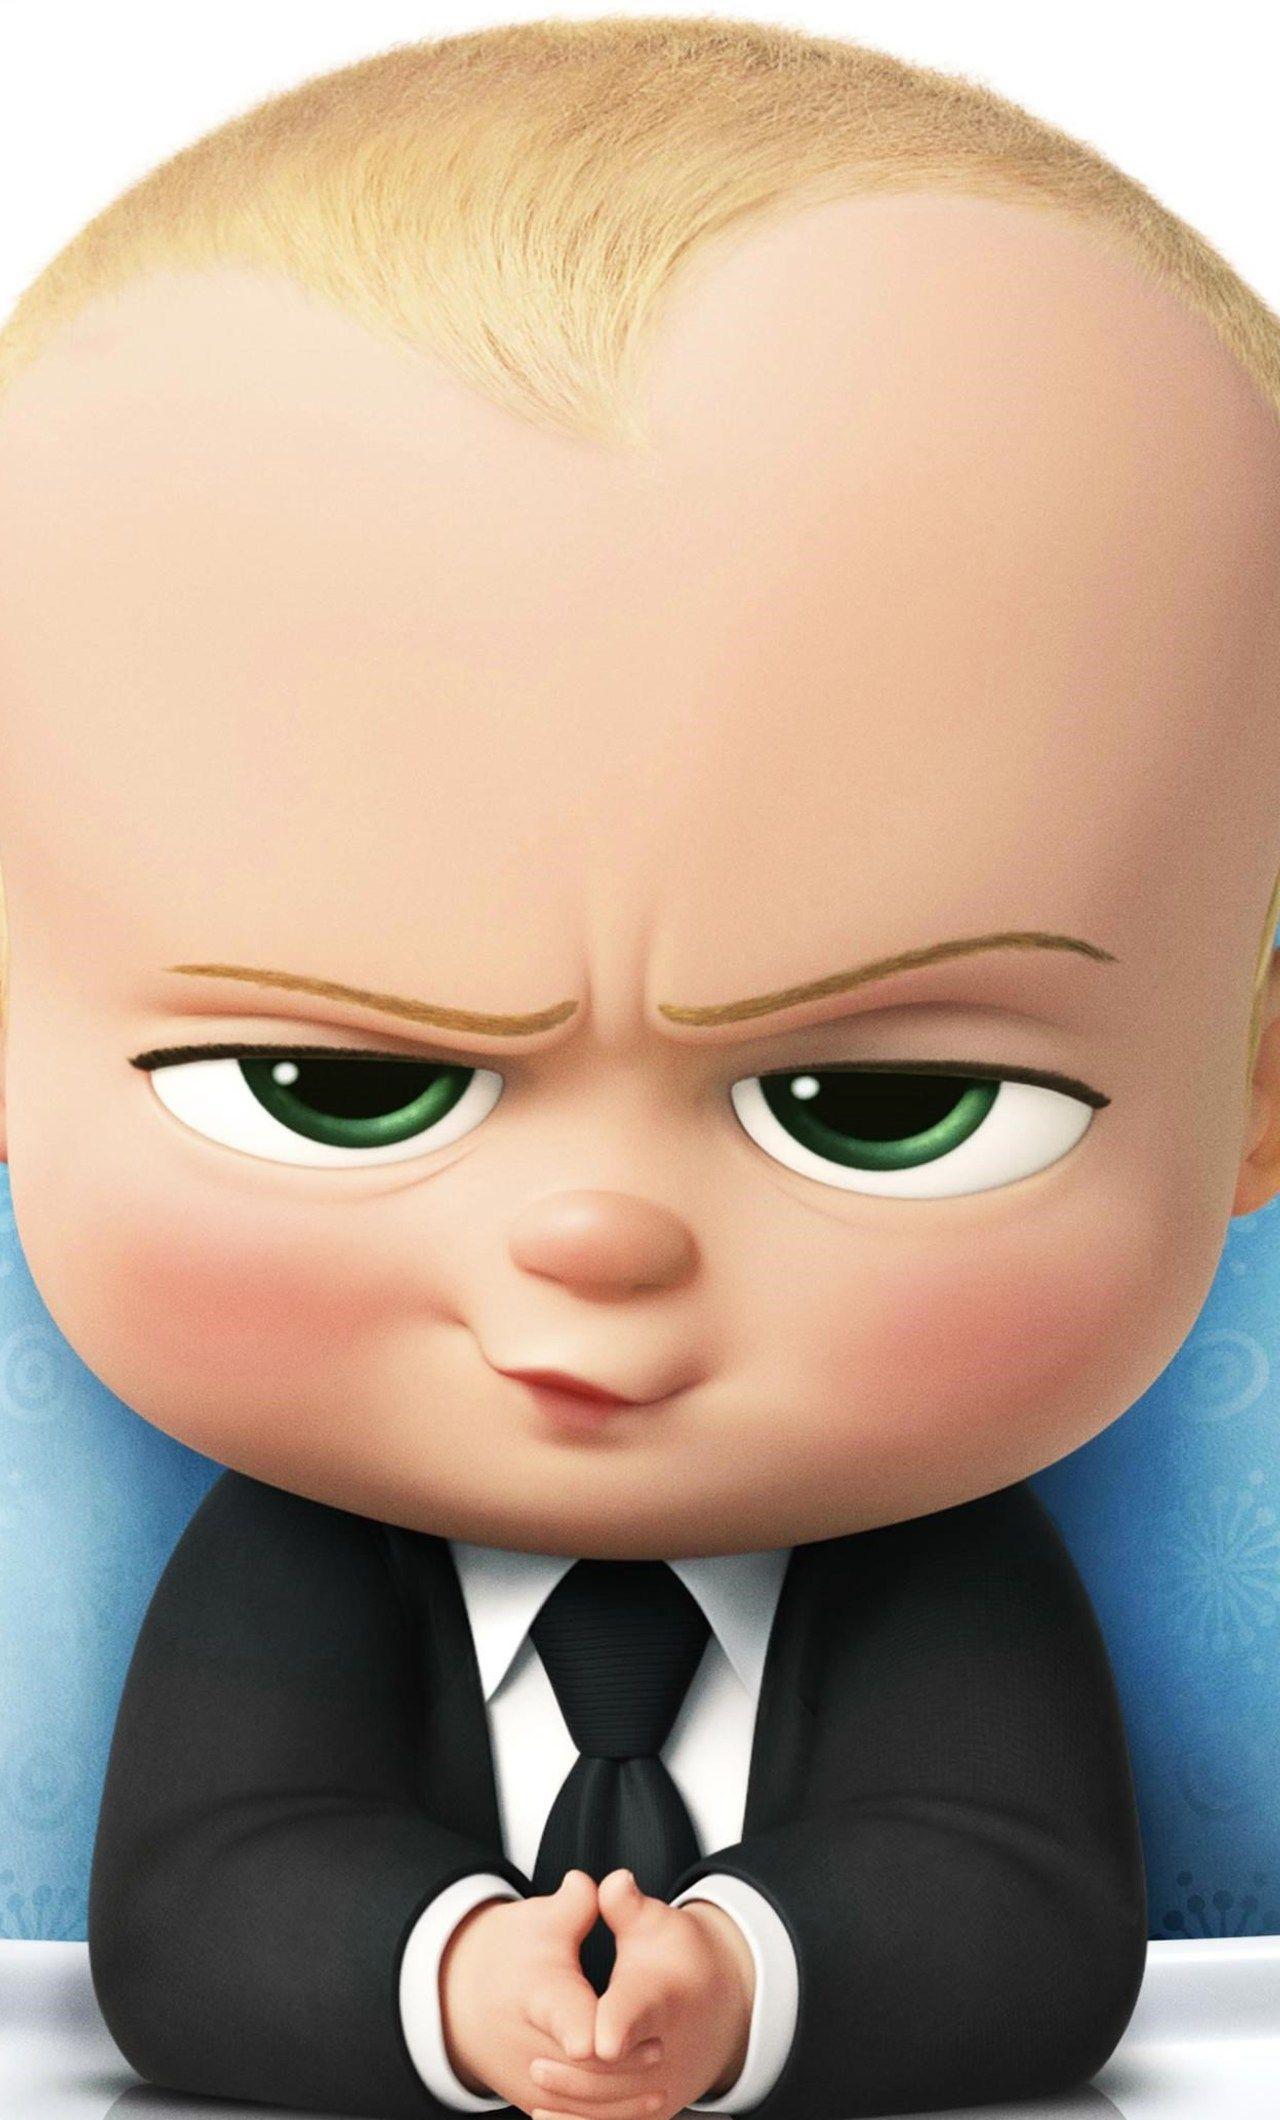 The Boss Baby Bộ phim hoạt hình không chỉ dành cho trẻ em  2sao